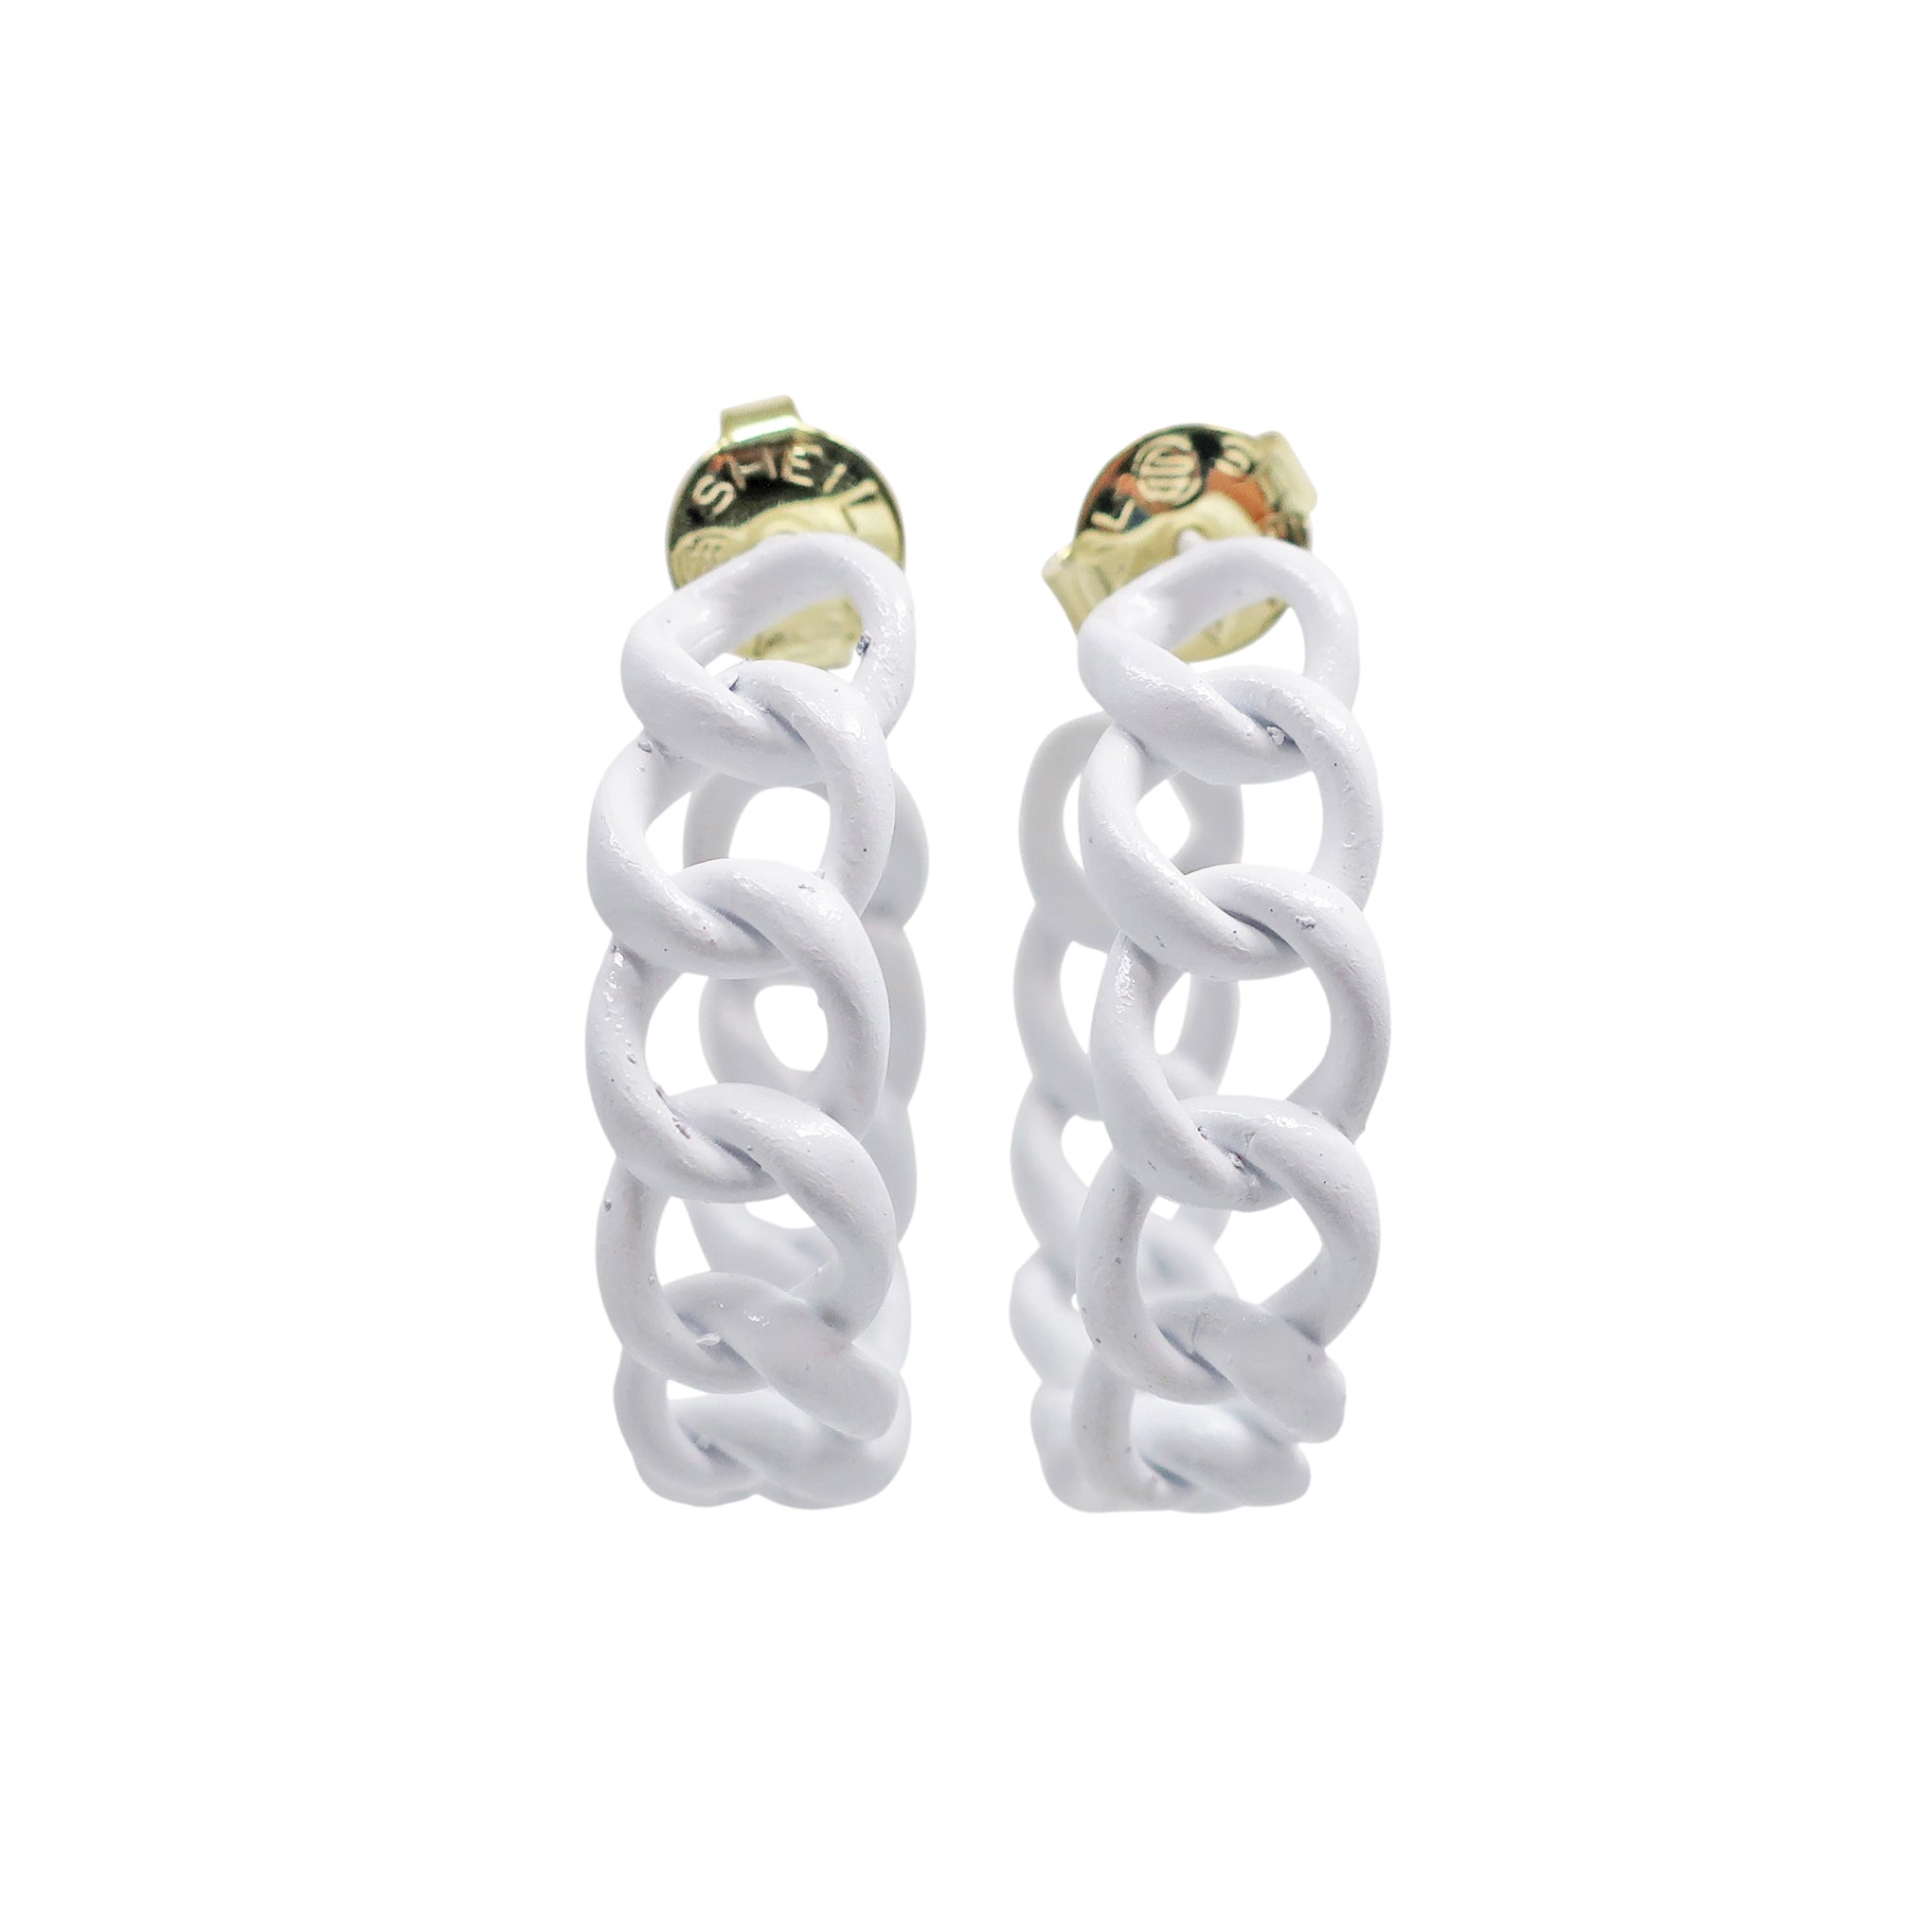 Sheila Fajl Petite Painted Chain Hoop Earrings in White